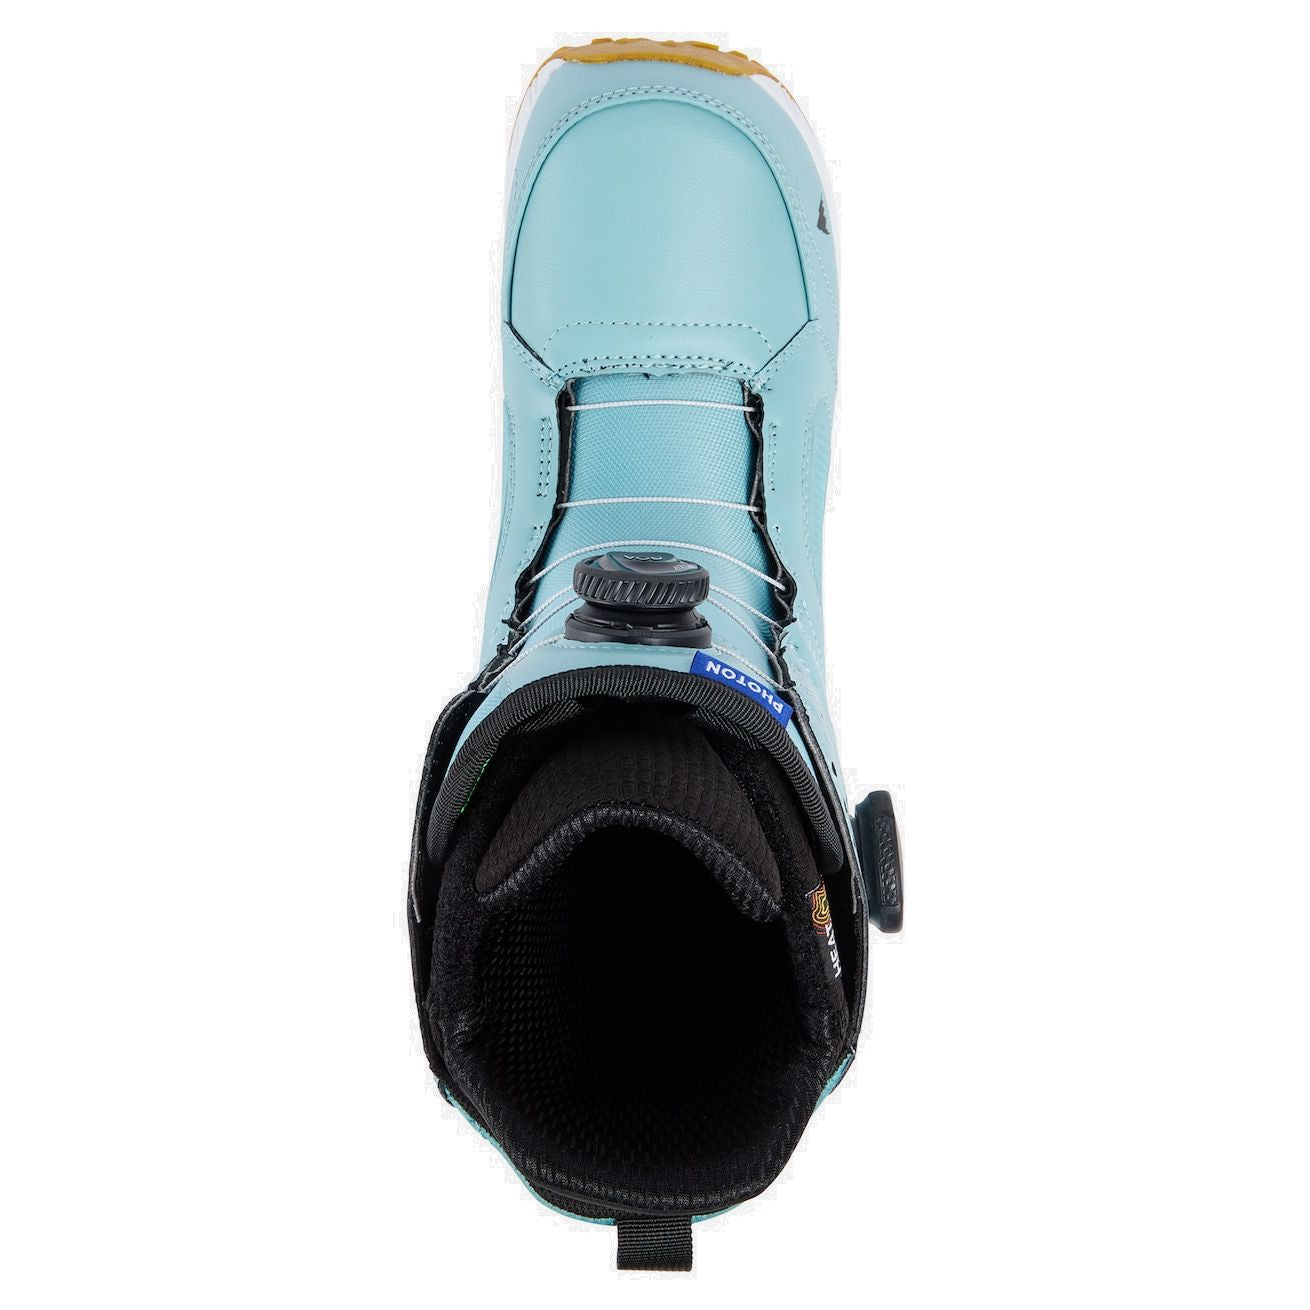 Men's Burton Photon BOA Snowboard Boots Rock Lichen Snowboard Boots